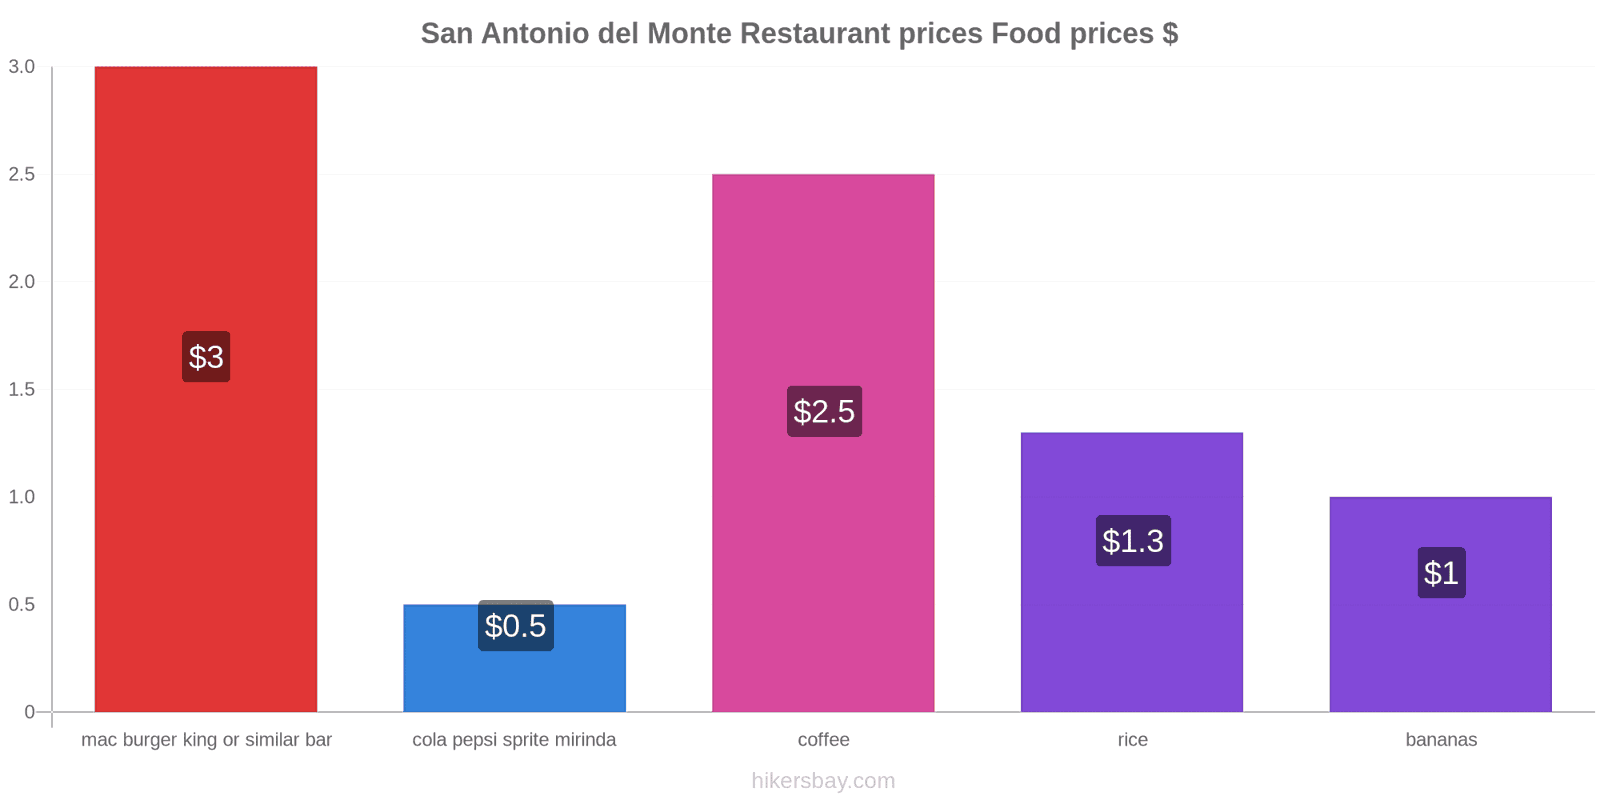 San Antonio del Monte price changes hikersbay.com